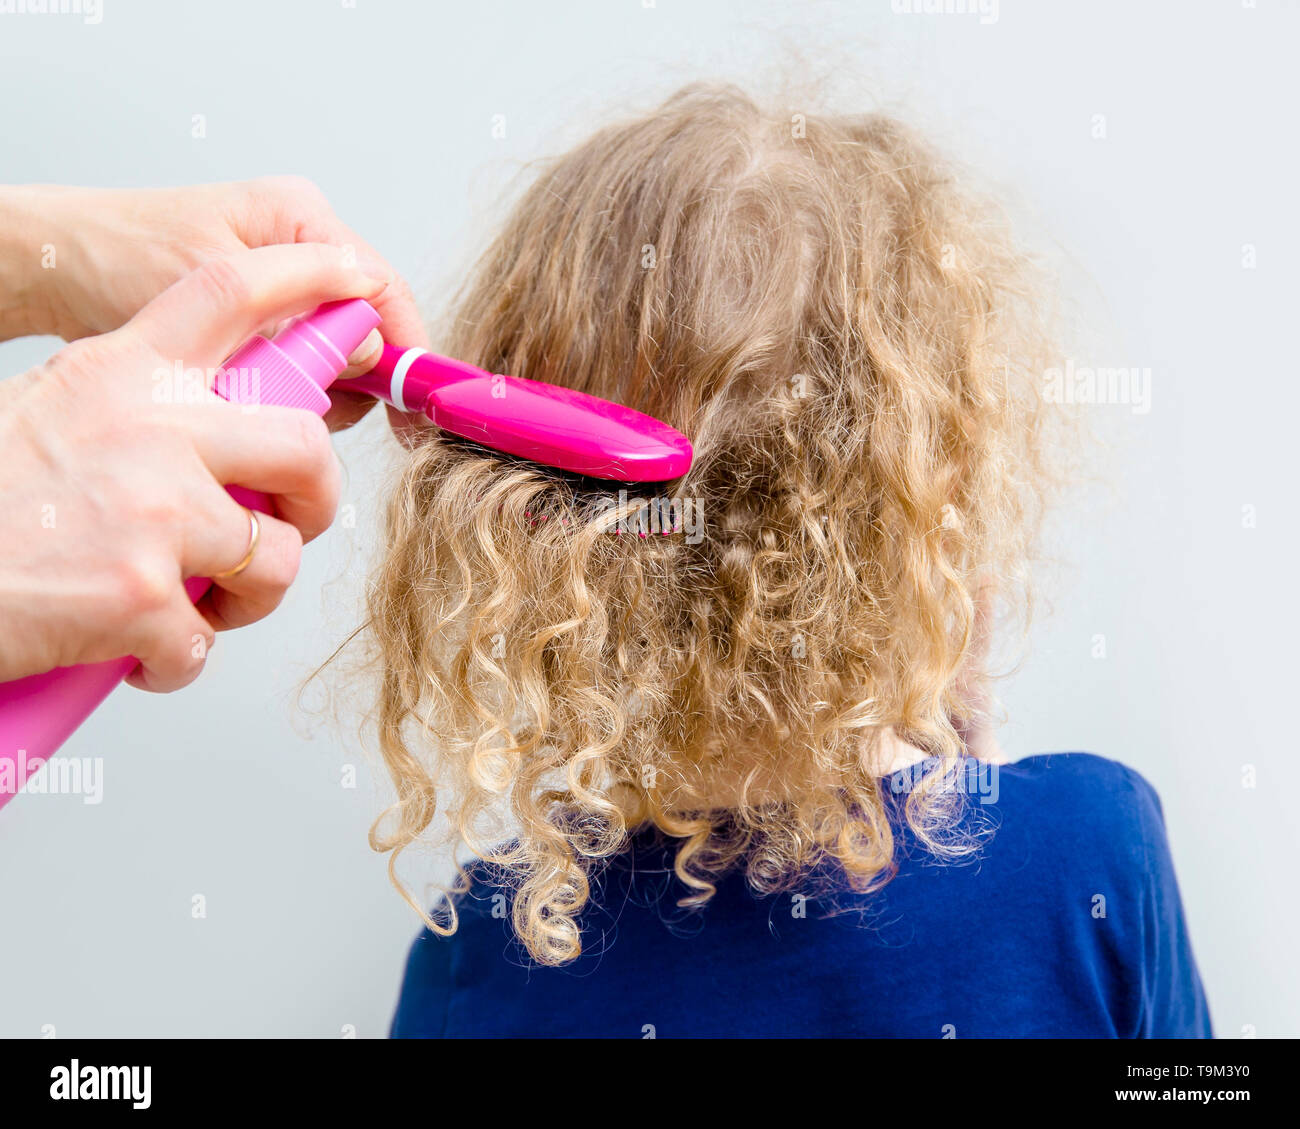 Nahaufnahme der Mutter Hände spray lockiges Haar Balsam auf die Mädchen zu helfen, unordentlichen Haar lockiges Haar Konzept kämmen. Drinnen minimal grau hinterlegt. Stockfoto